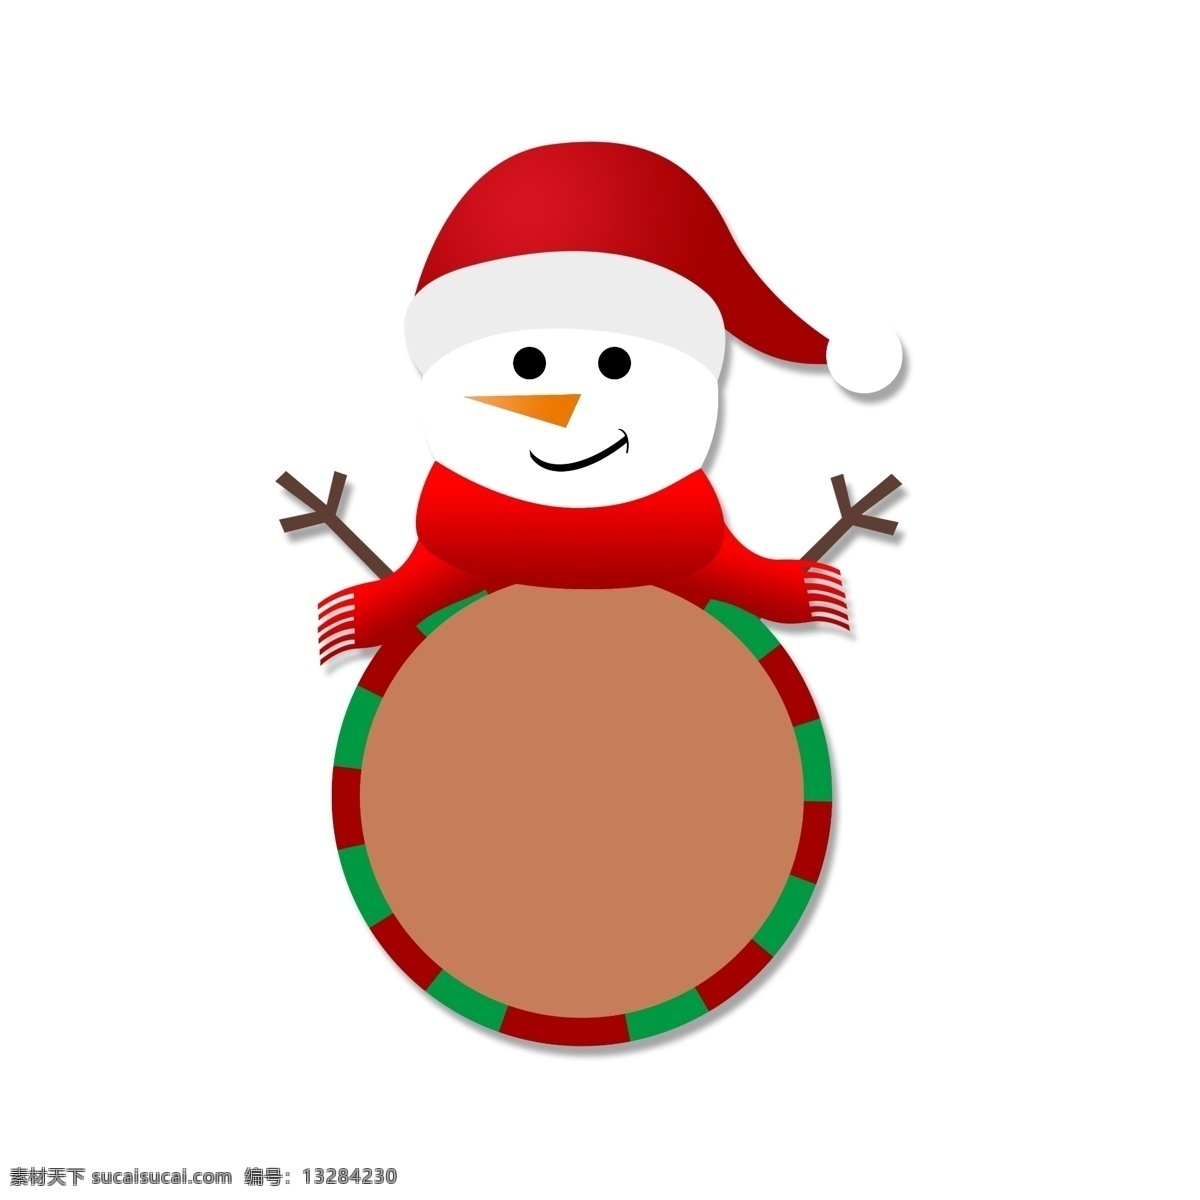 圣诞节 节日卡 通 促销活动 标签 节日标签 对话框 卡通边框 扁平 简洁 雪人 圣诞帽 围巾手绘 红绿